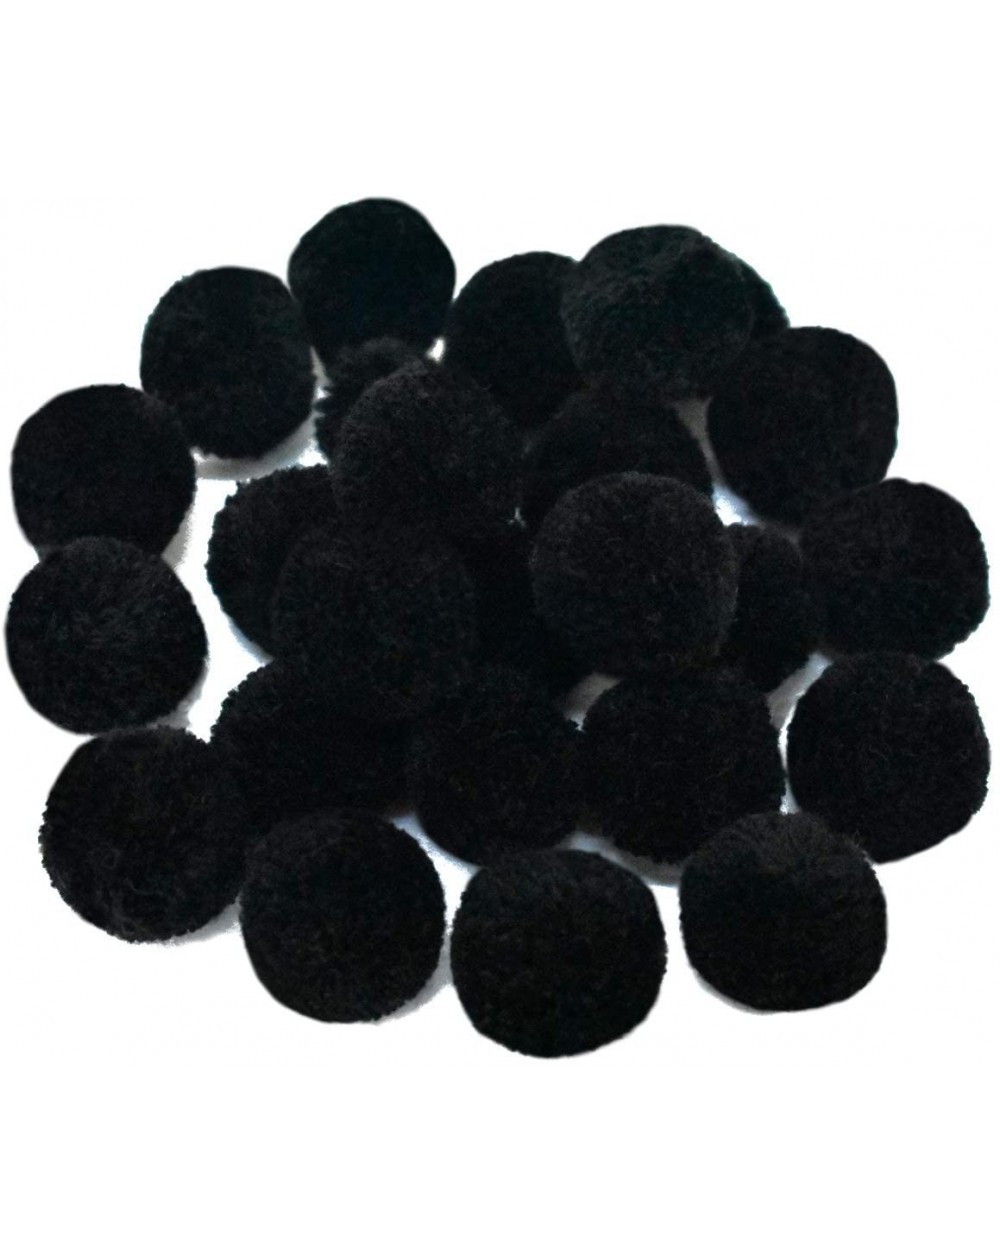 Tissue Pom Poms Pom Poms Ball for Craft and Hobby DIY Decoration (Black Color- 25 Pieces) - Black - CC18ILHOH9R $9.51